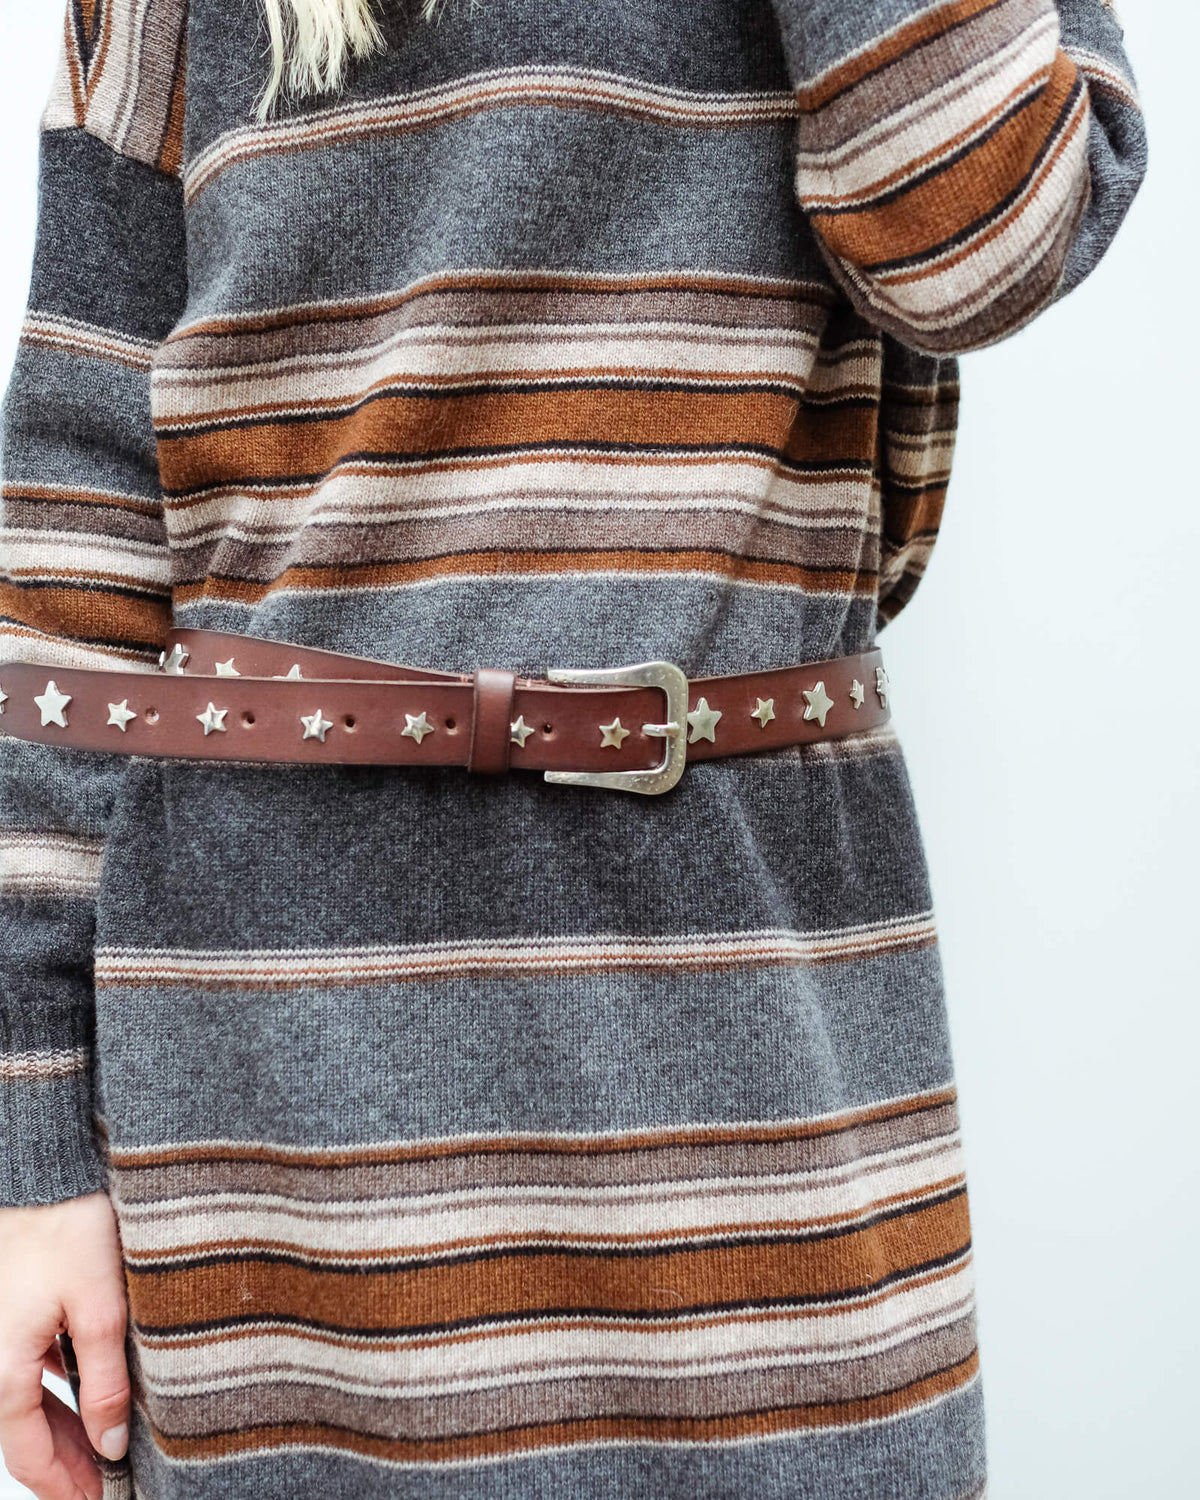 SW Star leather belt in dark brown